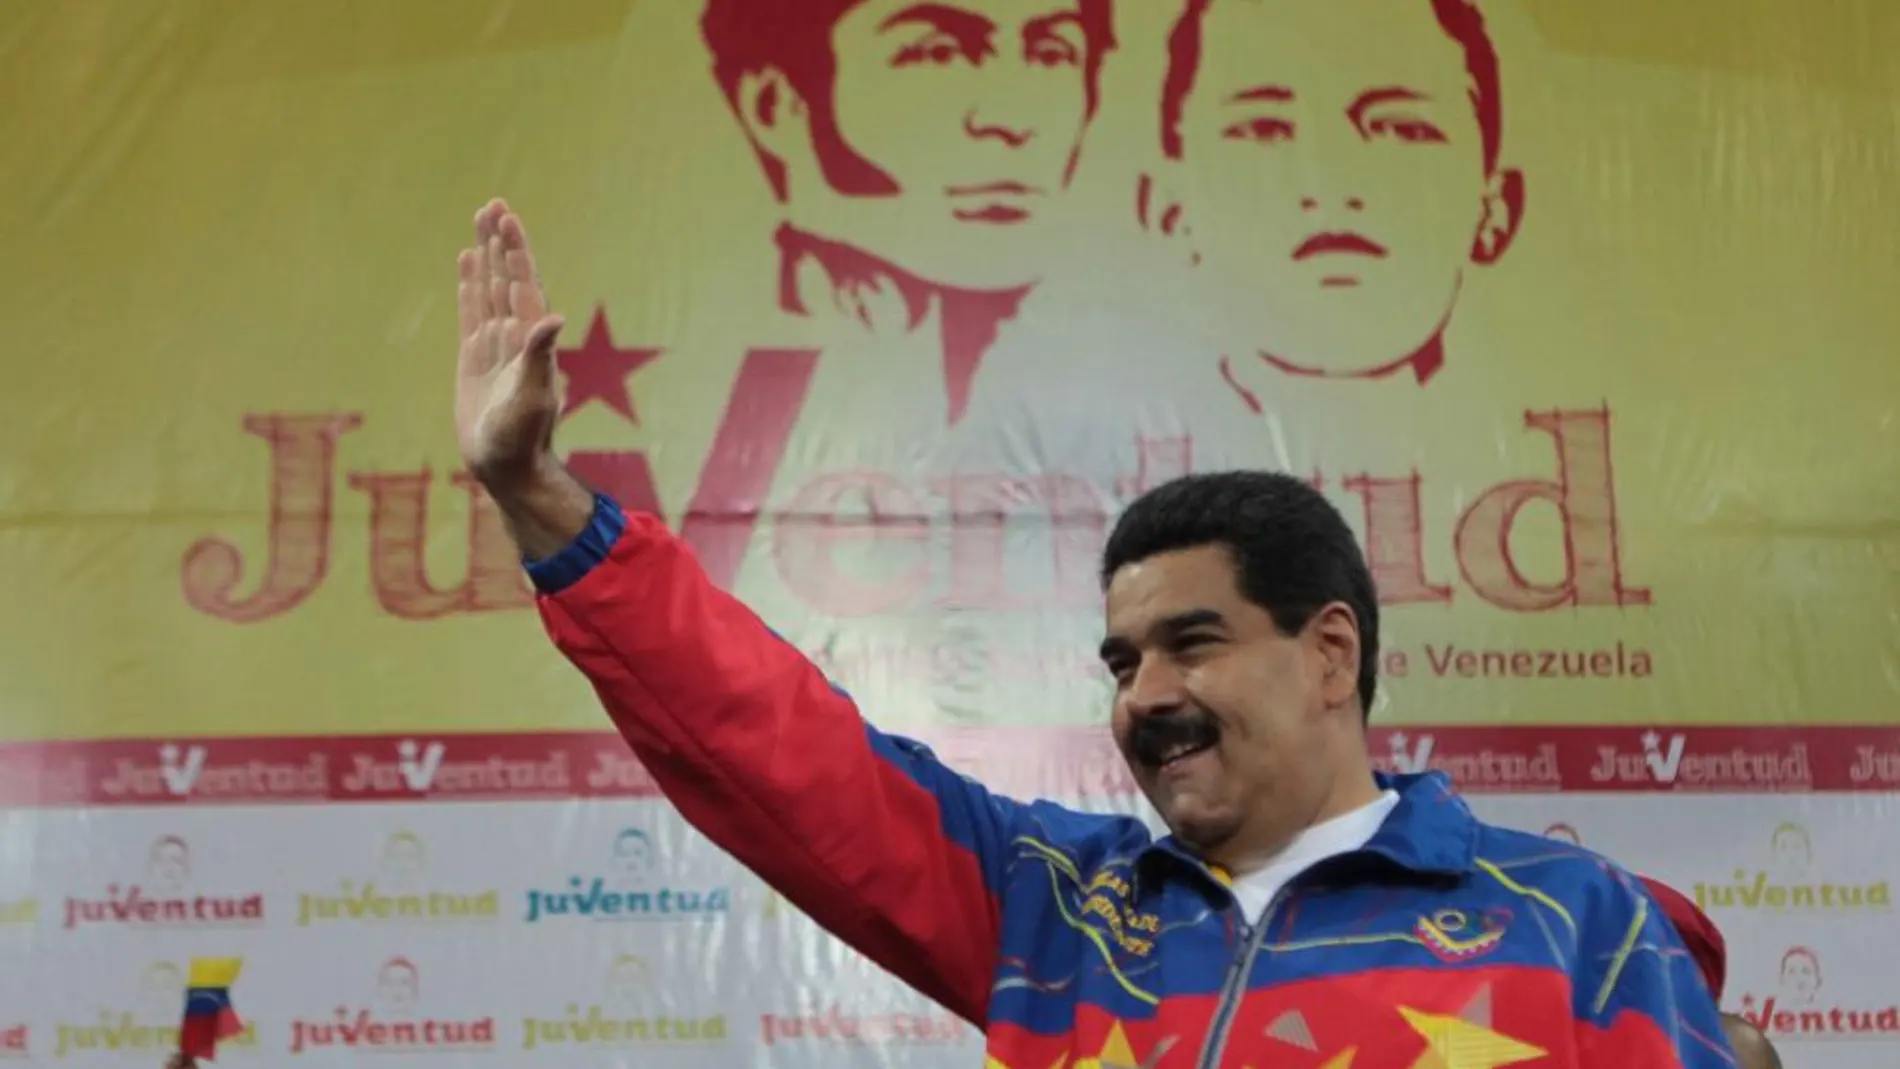 Fotografia cedida por la Presidencia de Venezuela del viernes 12 de septiembre de 2014, que muestra al presidente venezolano, Nicolás Maduro, durante un acto con el sector juvenil del Partido Socialista Unido (PSUV), en Caracas (Venezuela).